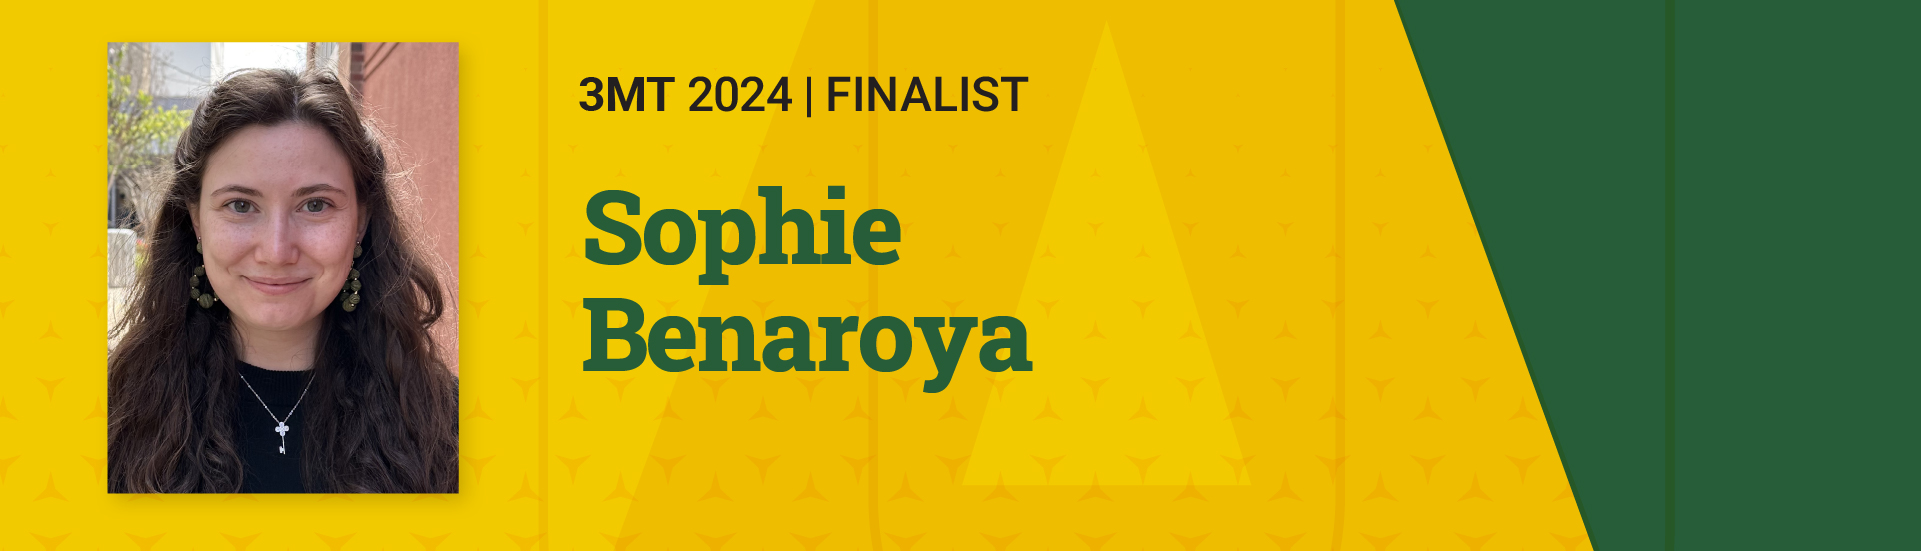 3MT 2024 Finalist Sophie Benaroya